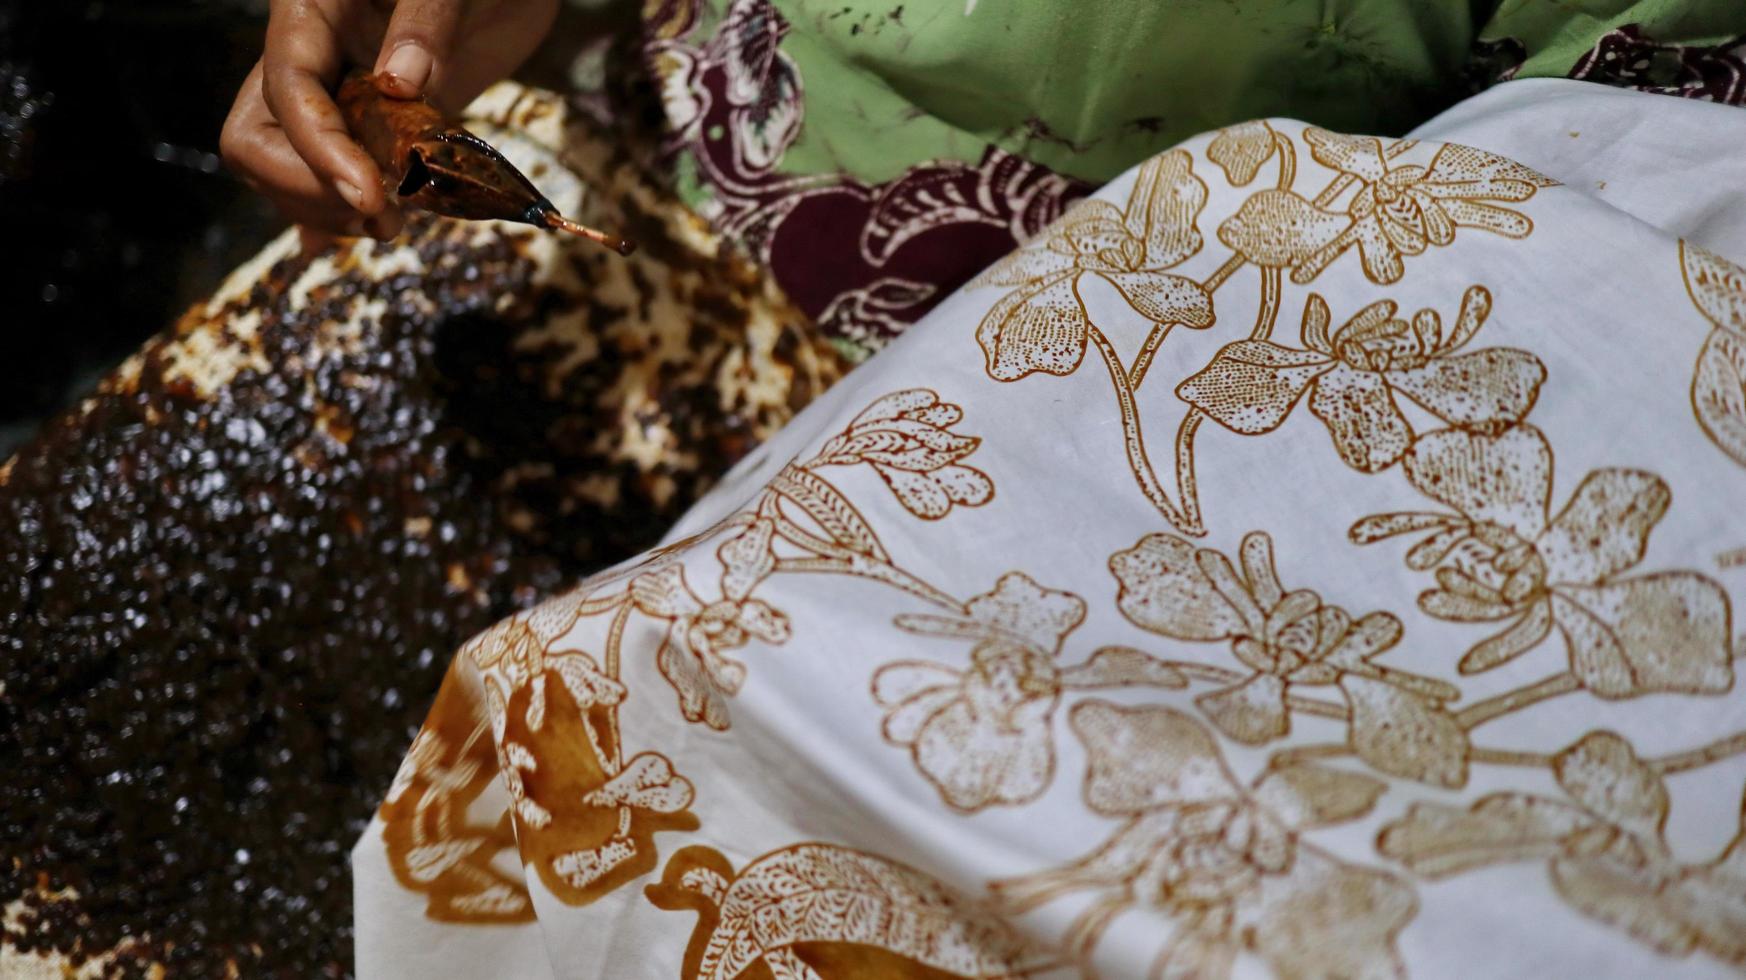 activiteit van het maken van batik, het maken en ontwerpen van witte stof met behulp van kantelen en was door over de stof te slaan, pekalongan, indonesië, 7 maart 2020 foto